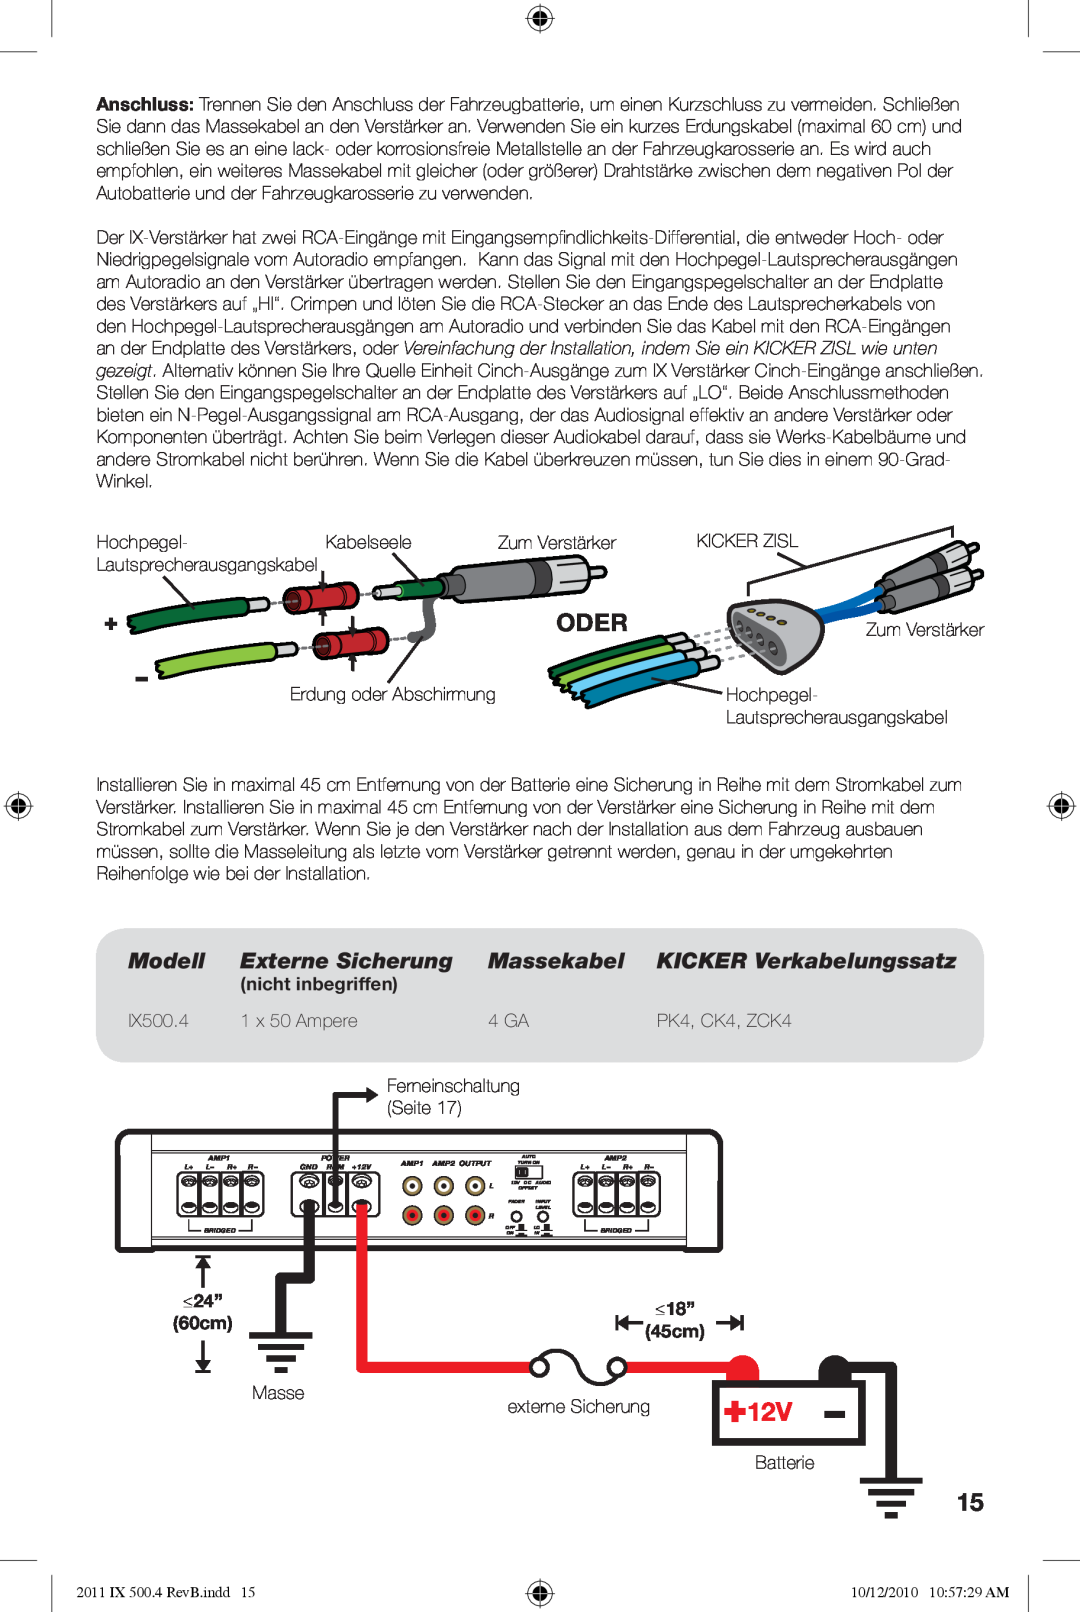 Kicker IX500.4 Oder, Externe Sicherung, Massekabel, KICKER Verkabelungssatz, nicht inbegriffen, 1 x 50 Ampere, 4 GA, Seite 